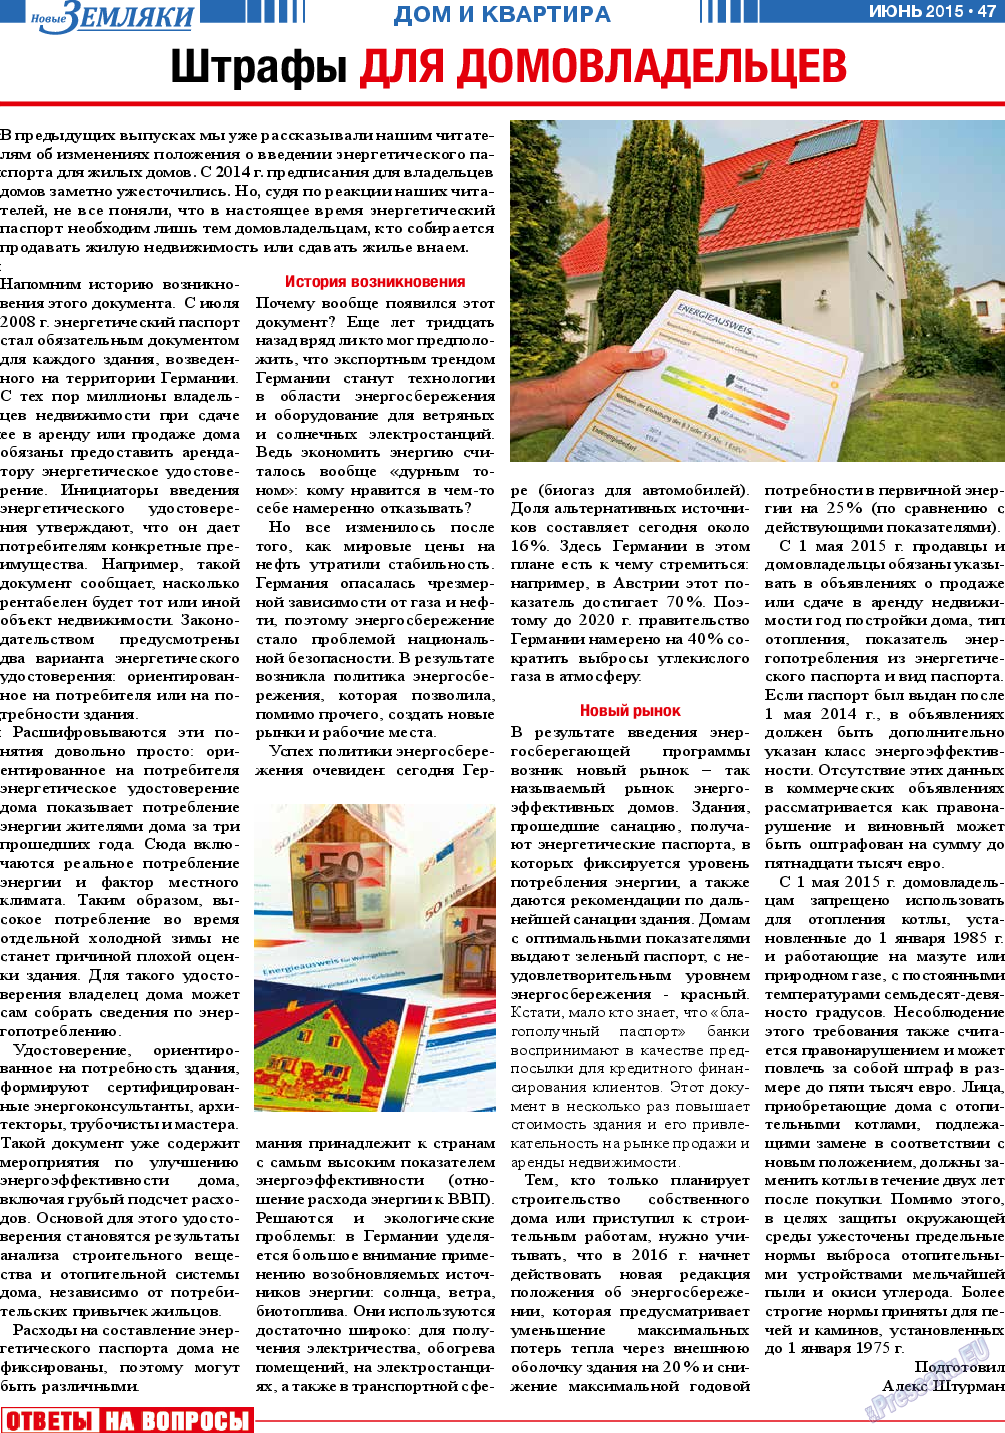 Новые Земляки (газета). 2015 год, номер 6, стр. 47